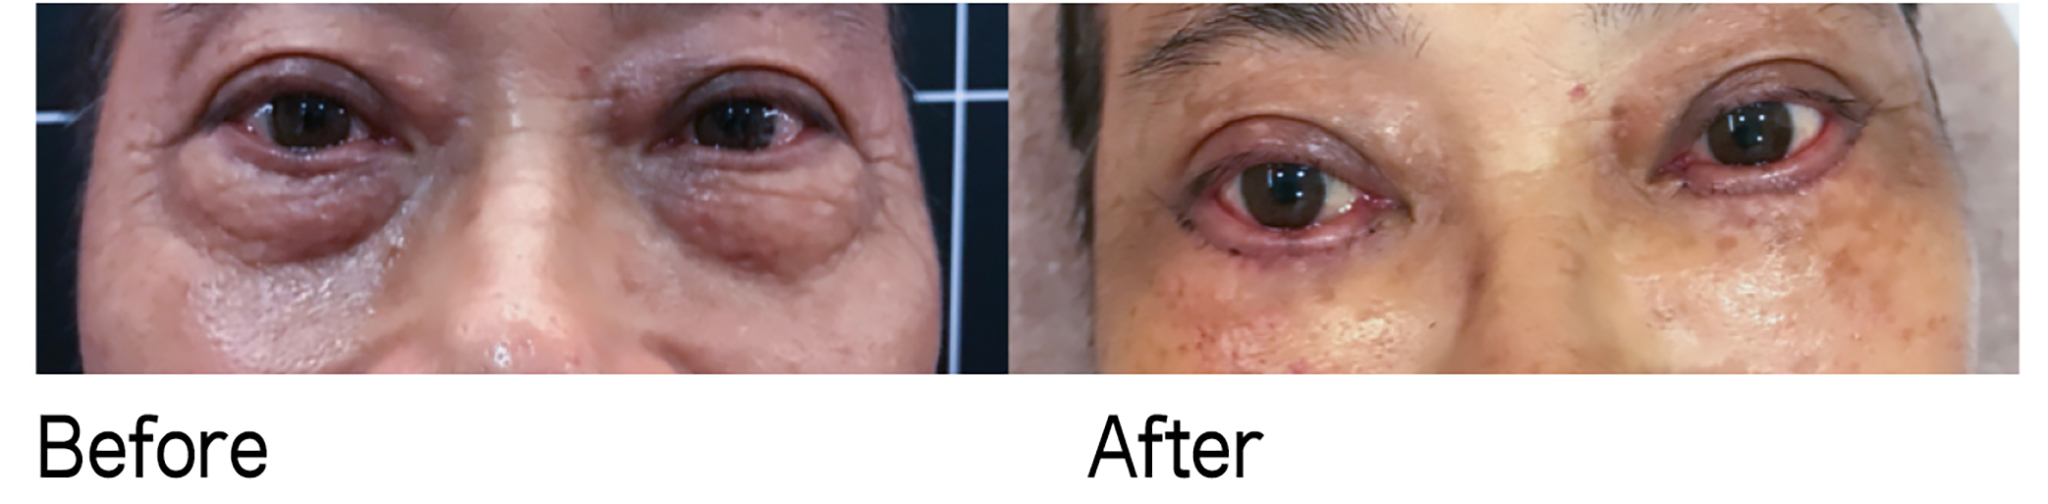 「無痕內開眼袋手術」結合「修皮手術」案例，可見臉上傷口並不明顯。 